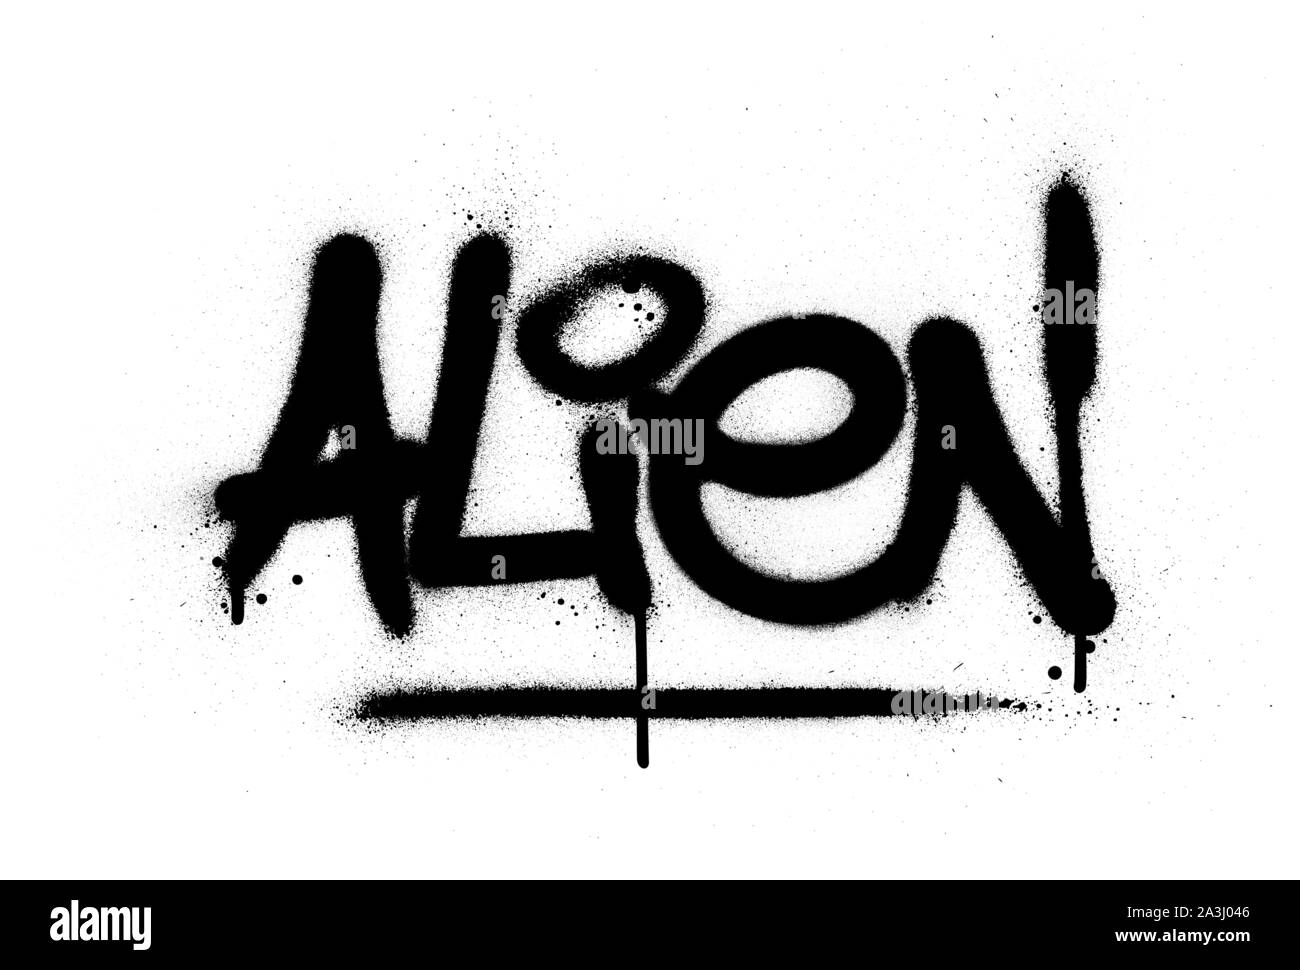 Graffiti alien Wort in Schwarz auf Weiß gespritzt Stock Vektor